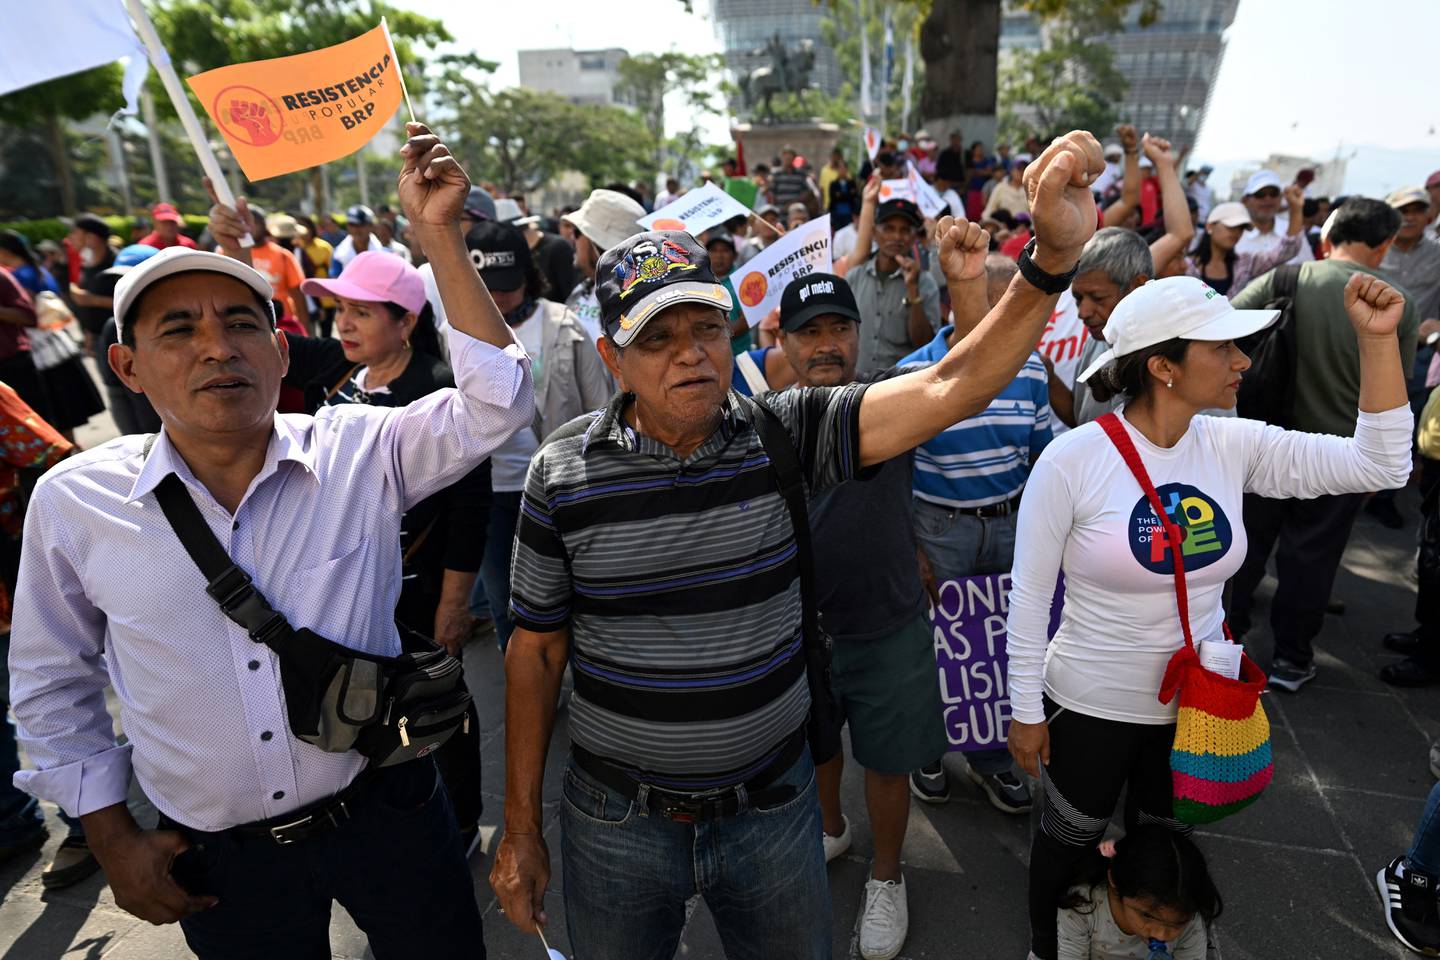 La manifestación en El Salvador se llevó a cabo como respuesta a los planes del presidente Nayib Bukele de buscar la reelección, coincidiendo con los actos conmemorativos de los acuerdos de paz que pusieron fin a la guerra civil en el país.